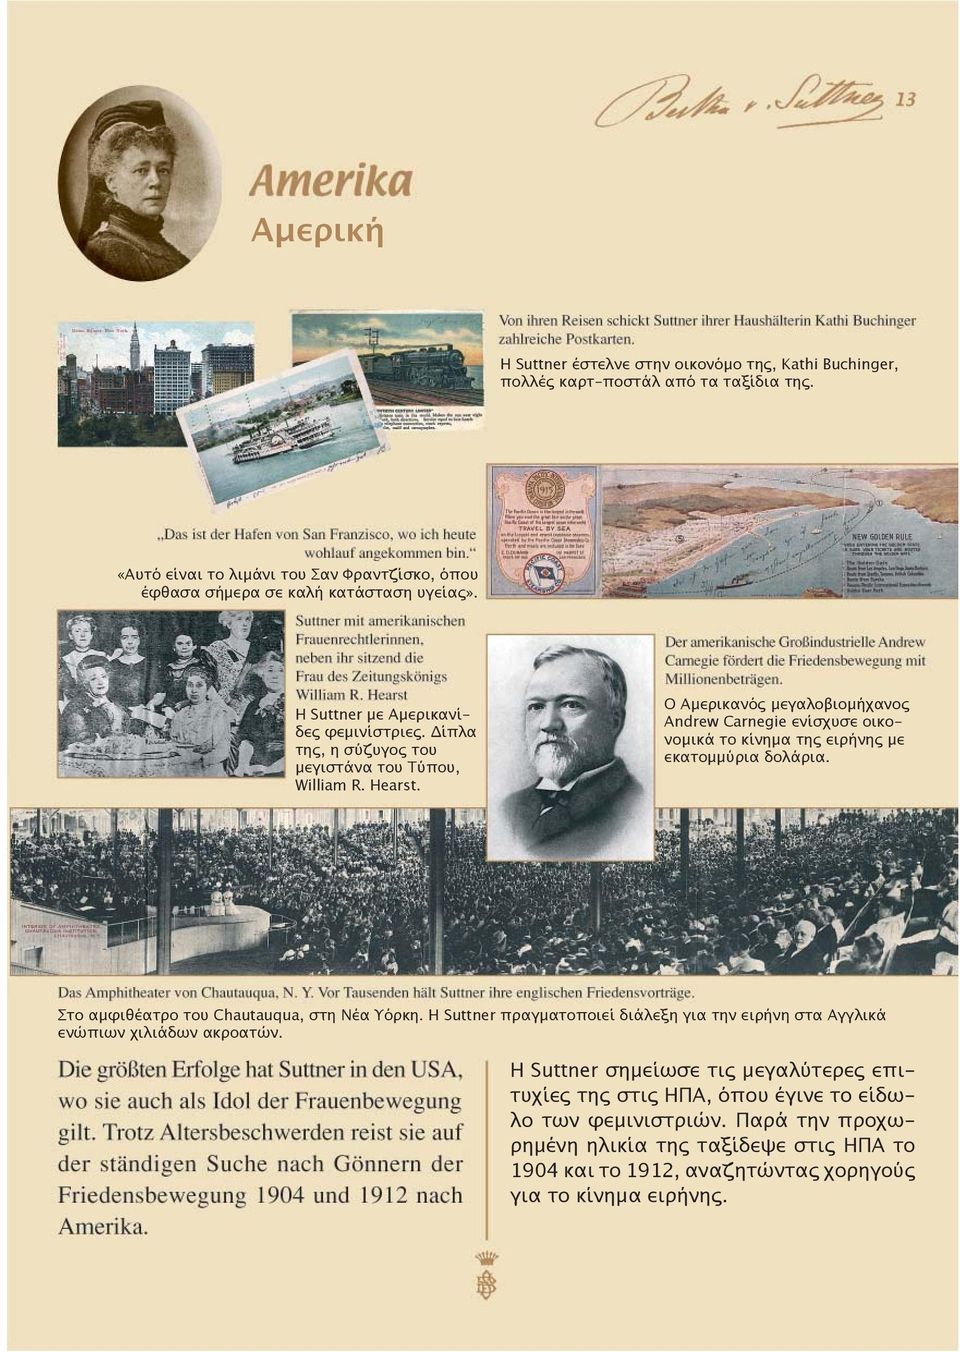 Ο Αμερικανός μεγαλοβιομήχανος Andrew Carnegie ενίσχυσε οικονομικά το κίνημα της ειρήνης με εκατομμύρια δολάρια. Στο αμφιθέατρο του Chautauqua, στη Νέα Υόρκη.